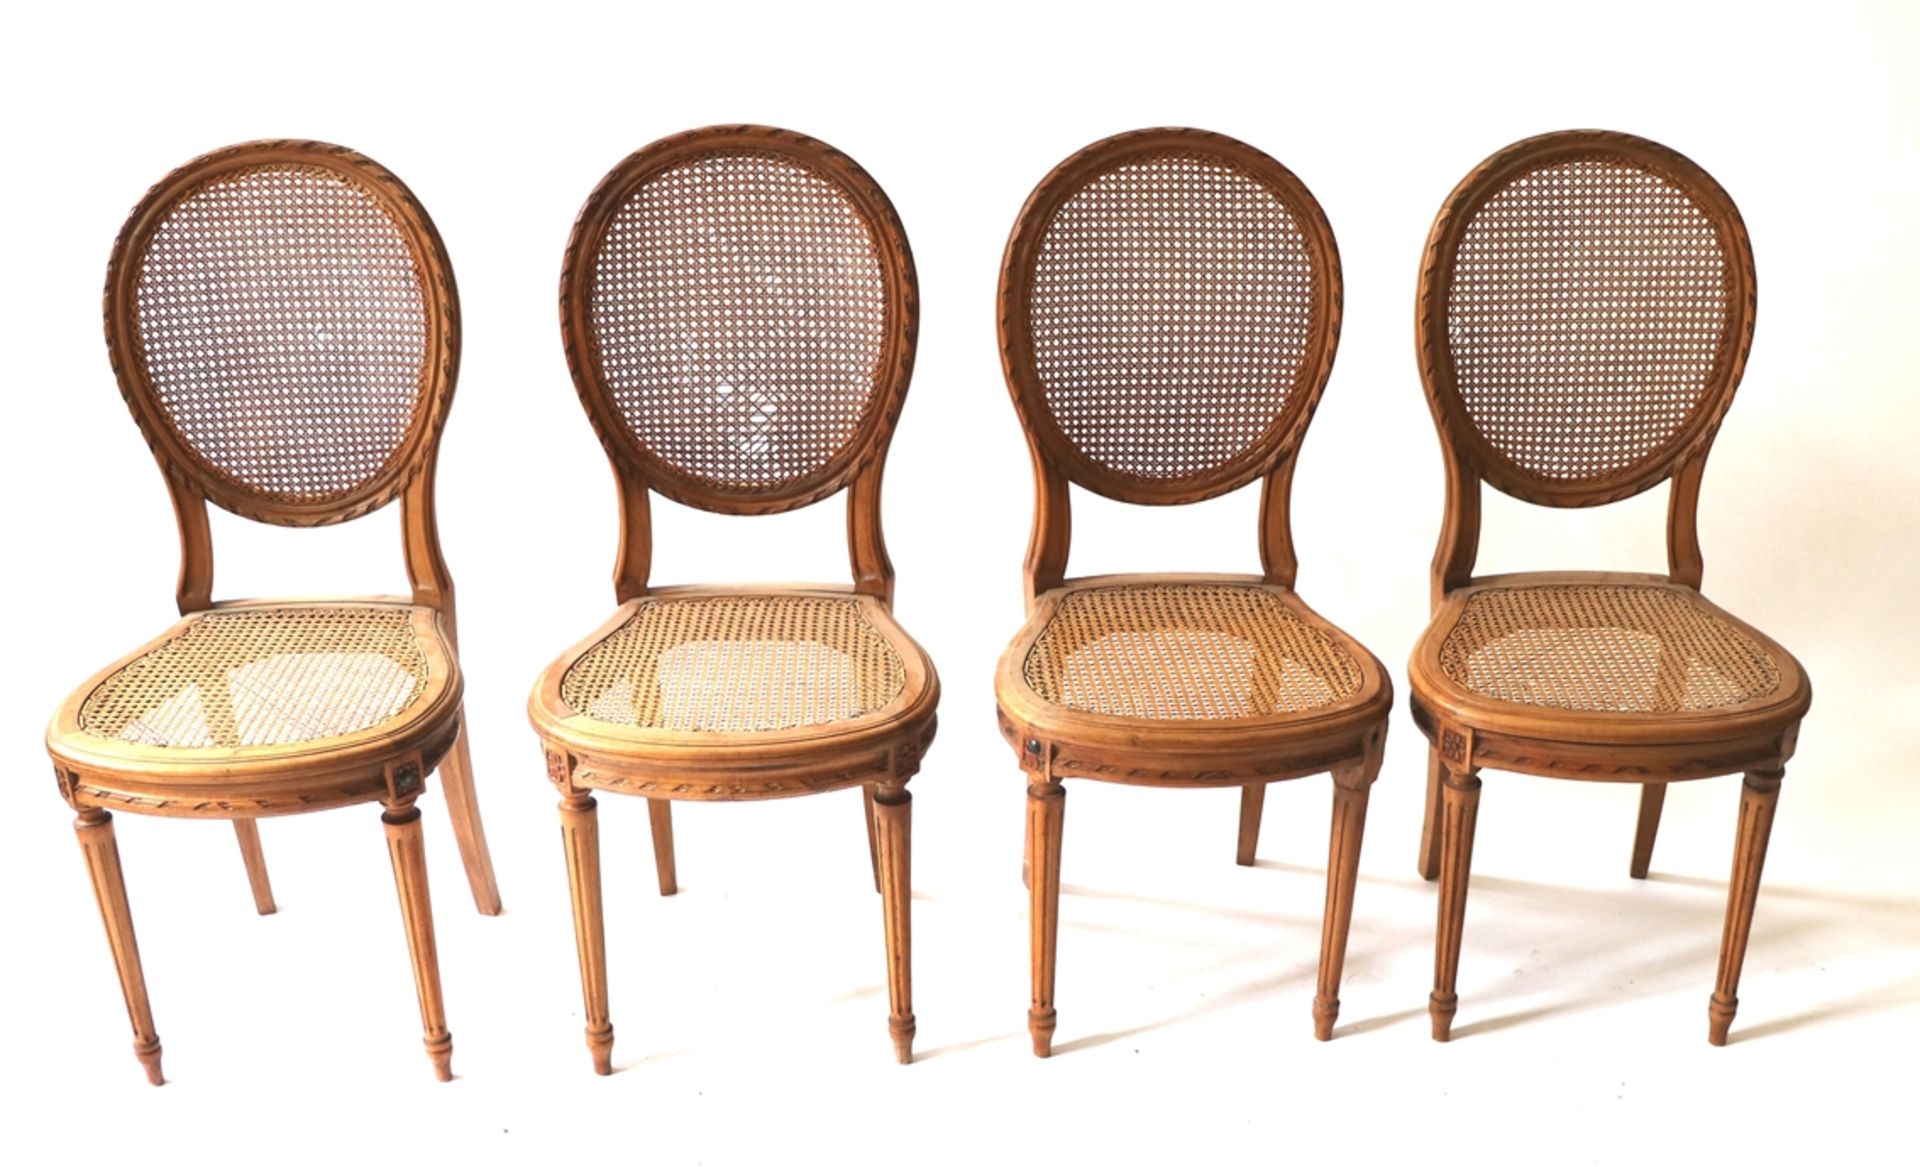 4 Stühle, Frankreich um 1900Nußbaum. Sitz und Rückenlehne mit Rohrgeflecht. Gestell mit Schnitzerei.